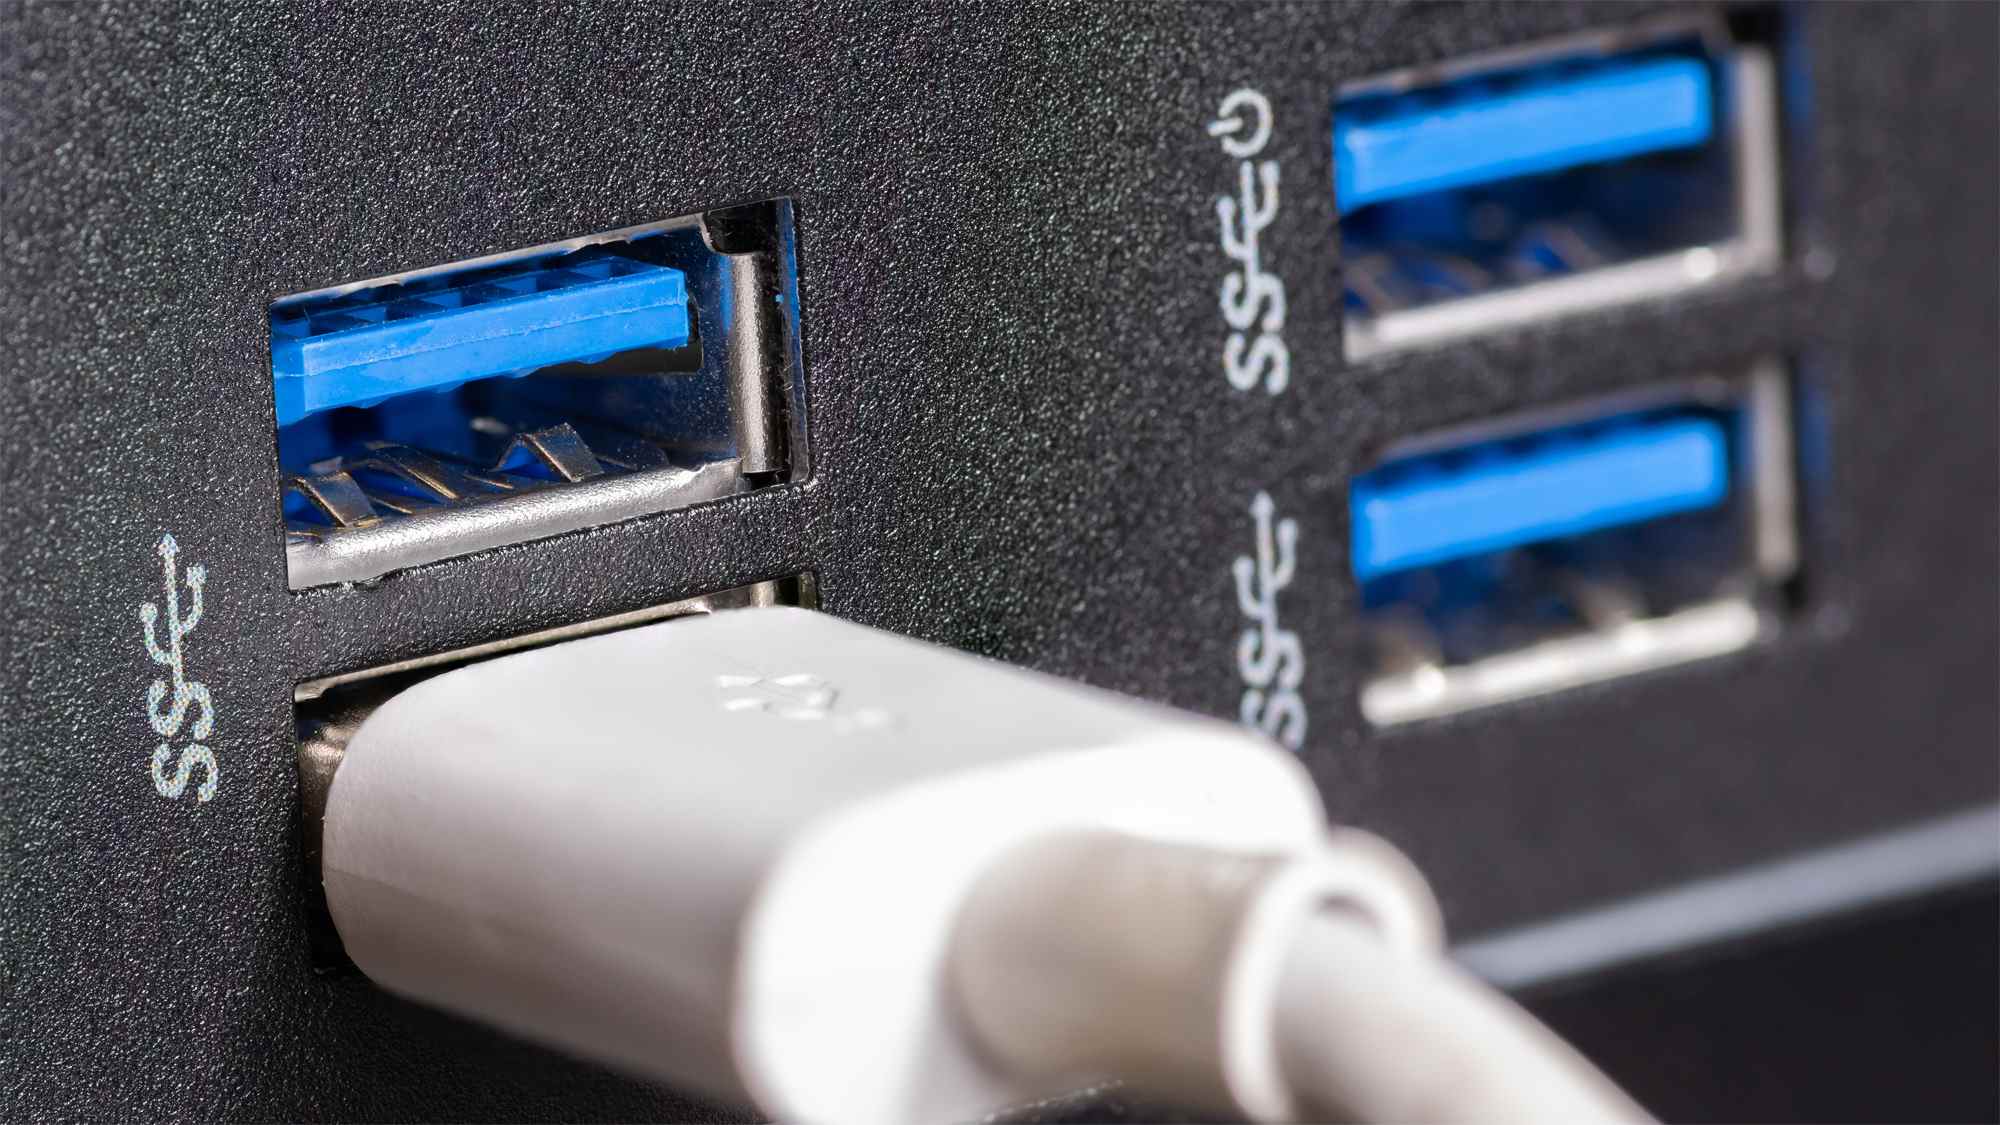 Les ports USB 3.0 / 3.1 / 3.2 5 Gbps sont souvent bleus